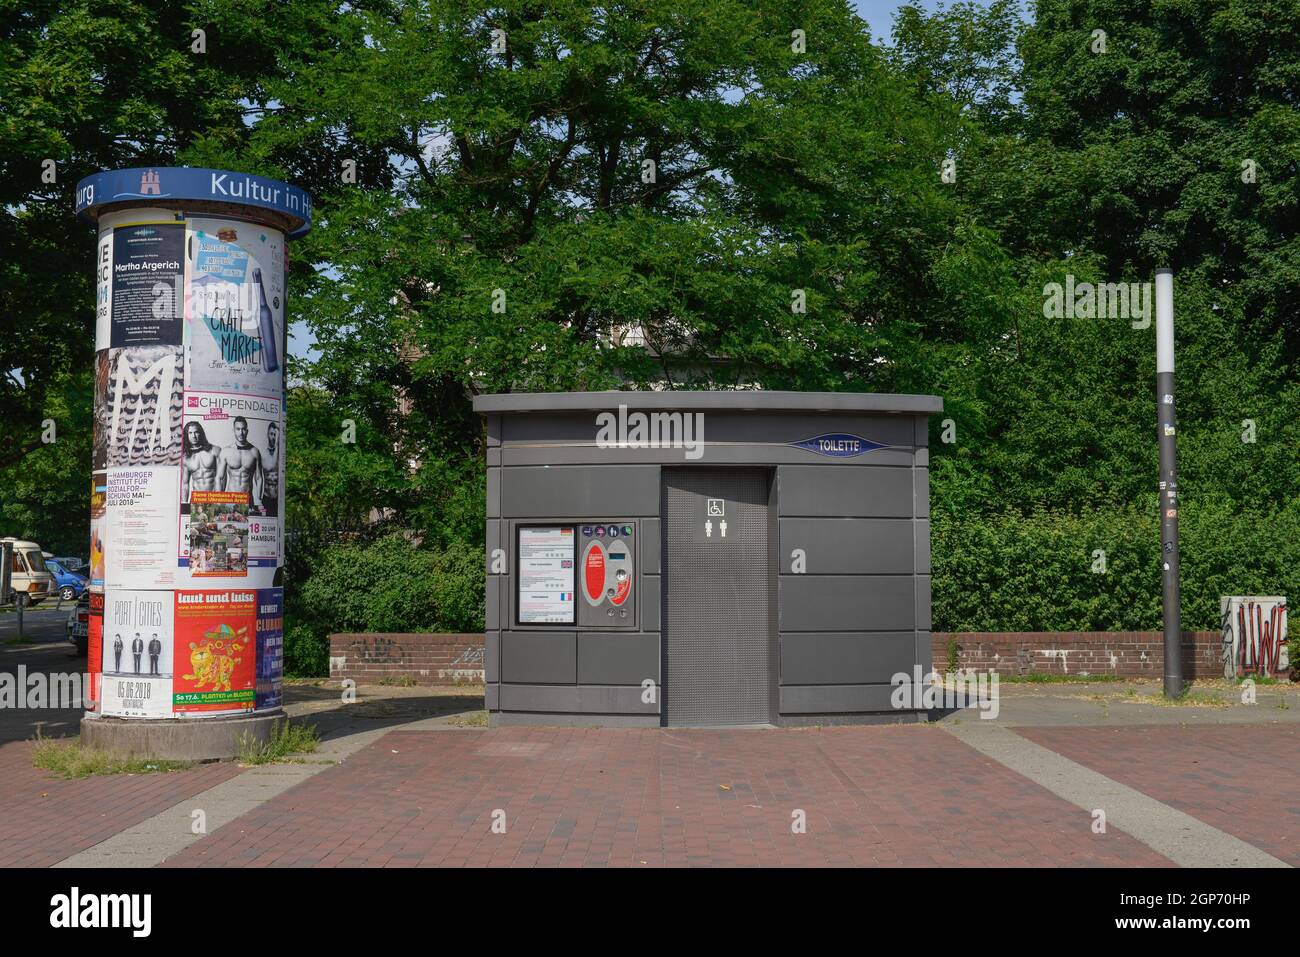 gabinetto pubblico, Millerntor, Amburgo, Germania Foto Stock